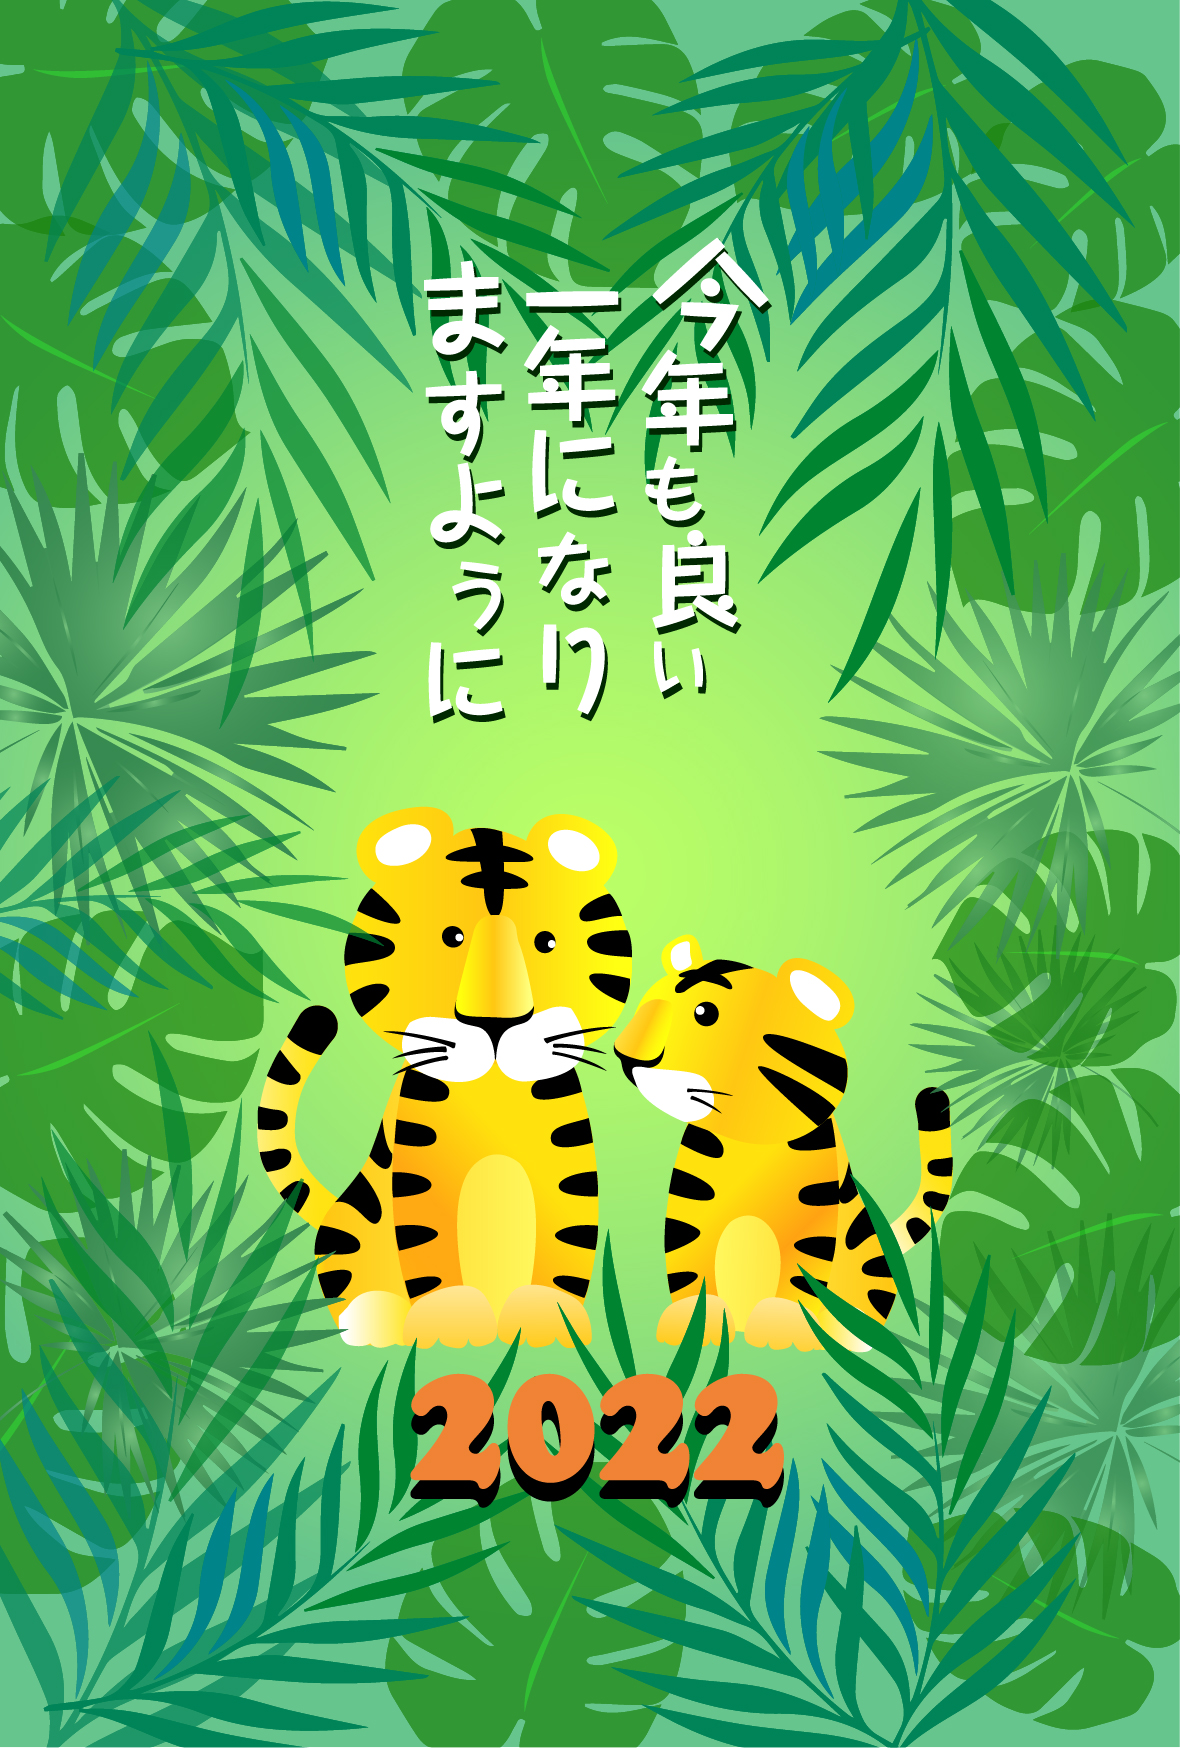 ジャングルに住む虎の親子が2022年の幸運を願った心温まる年賀状